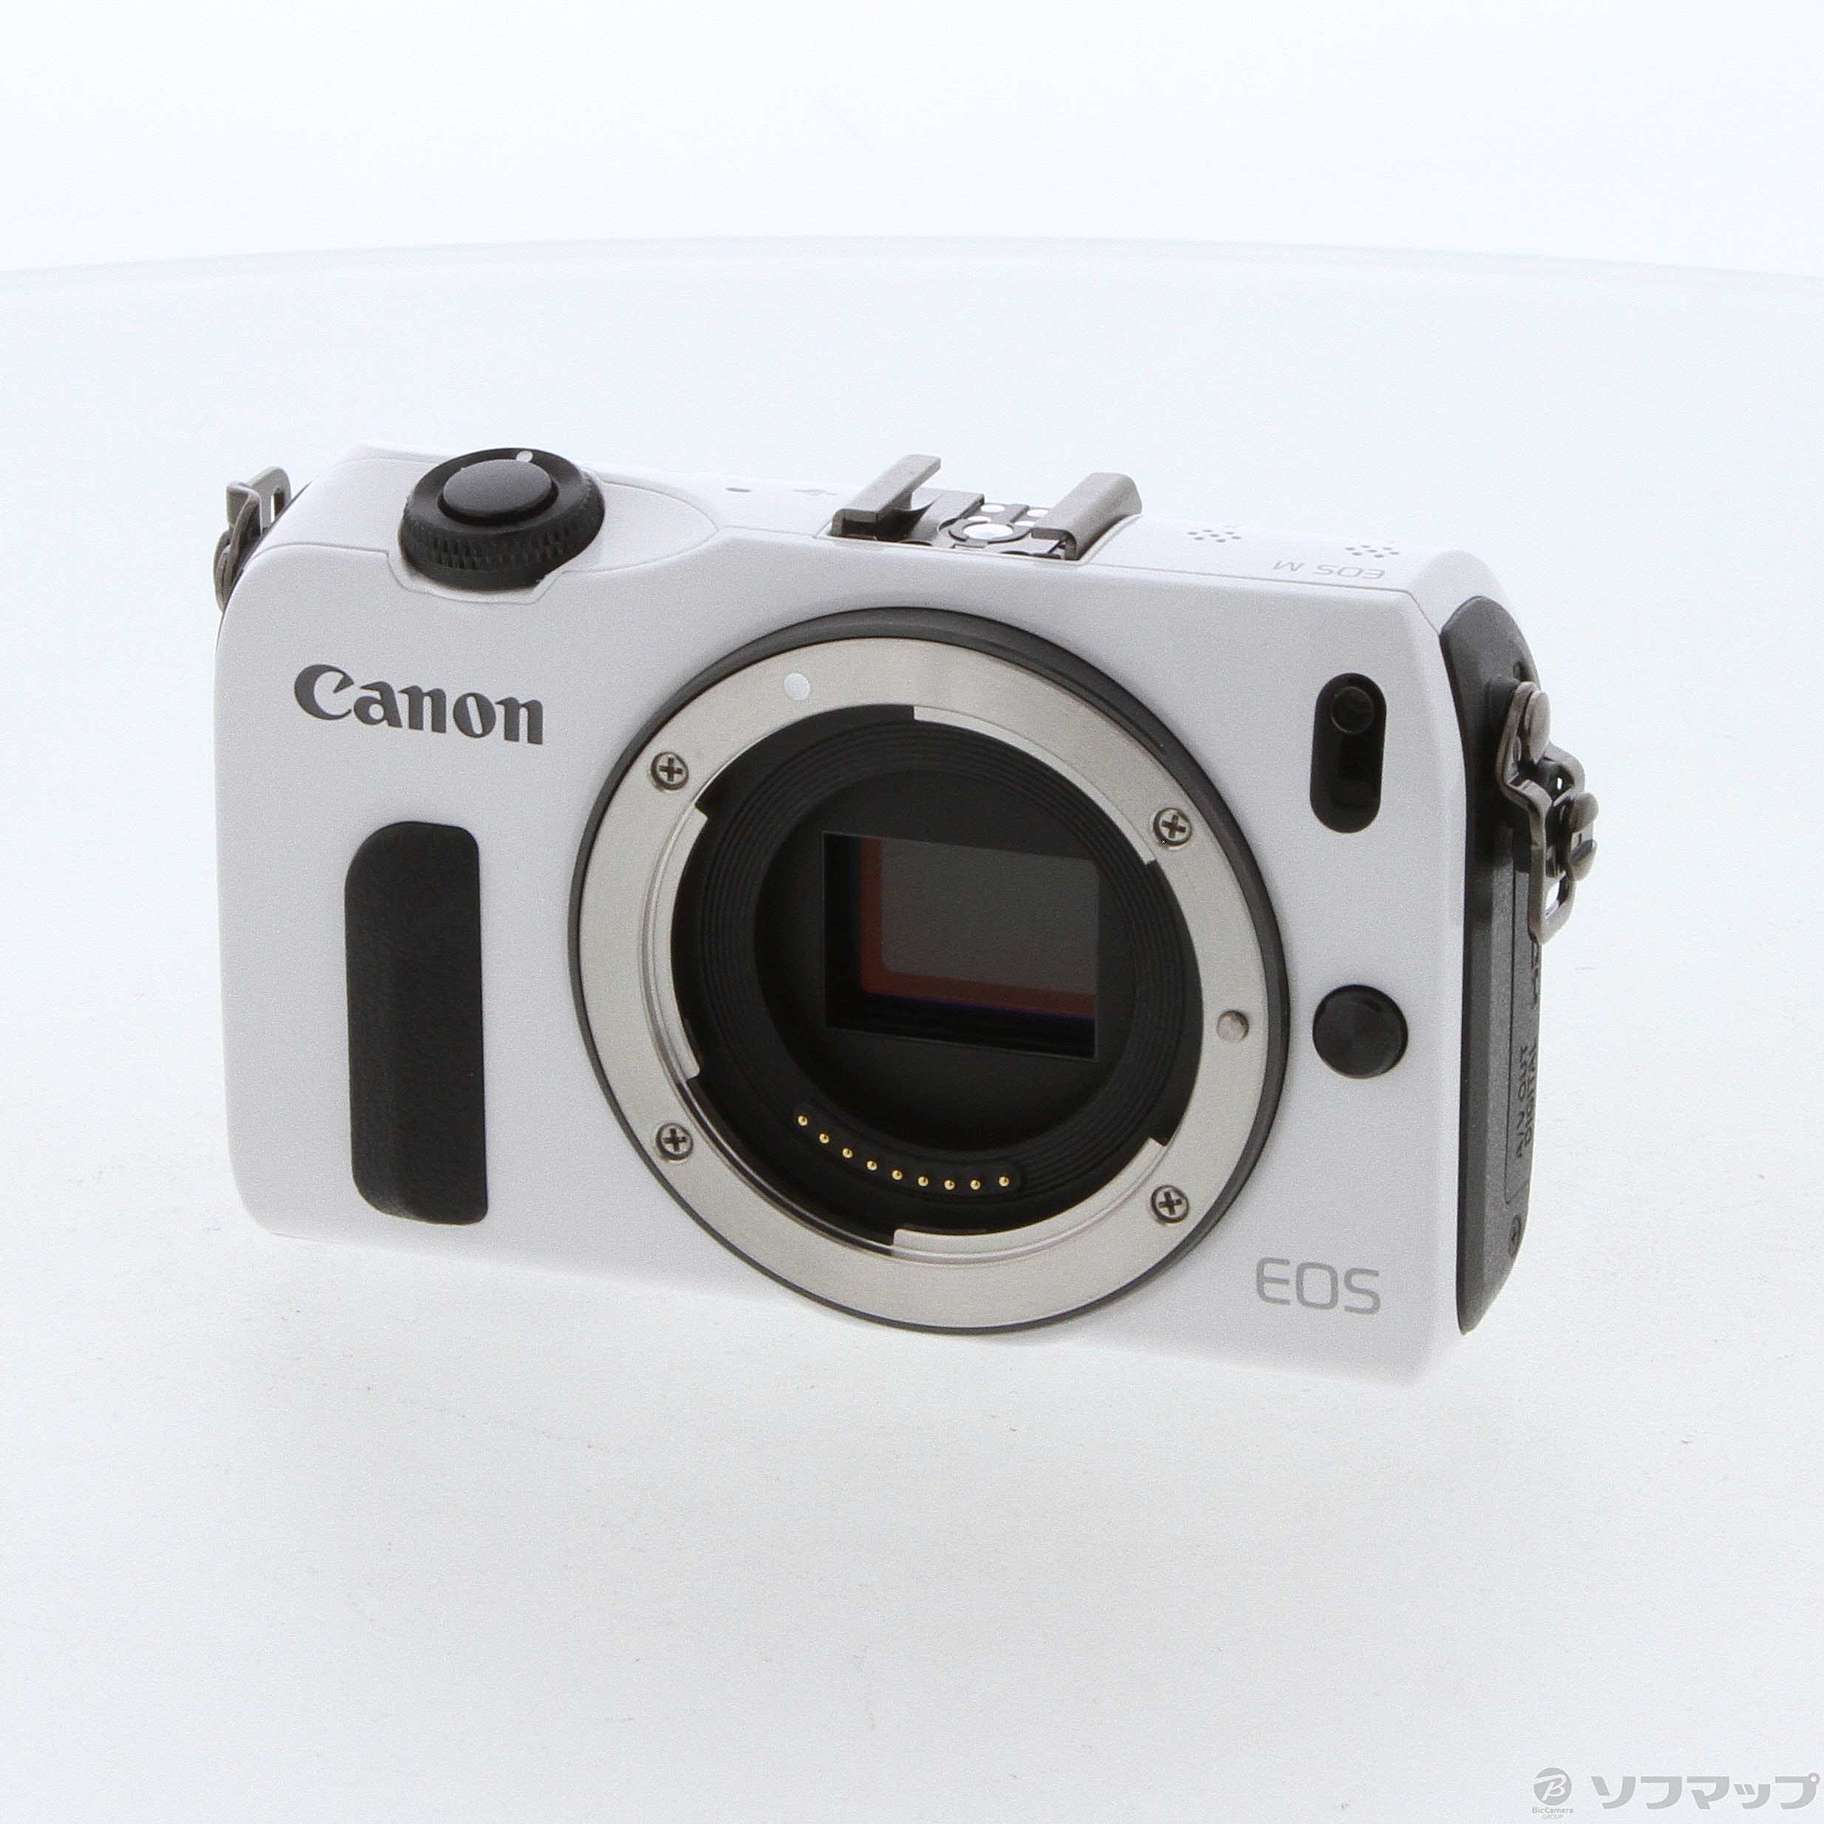 Canon キャノン EOS M デジタルカメラ ホワイト